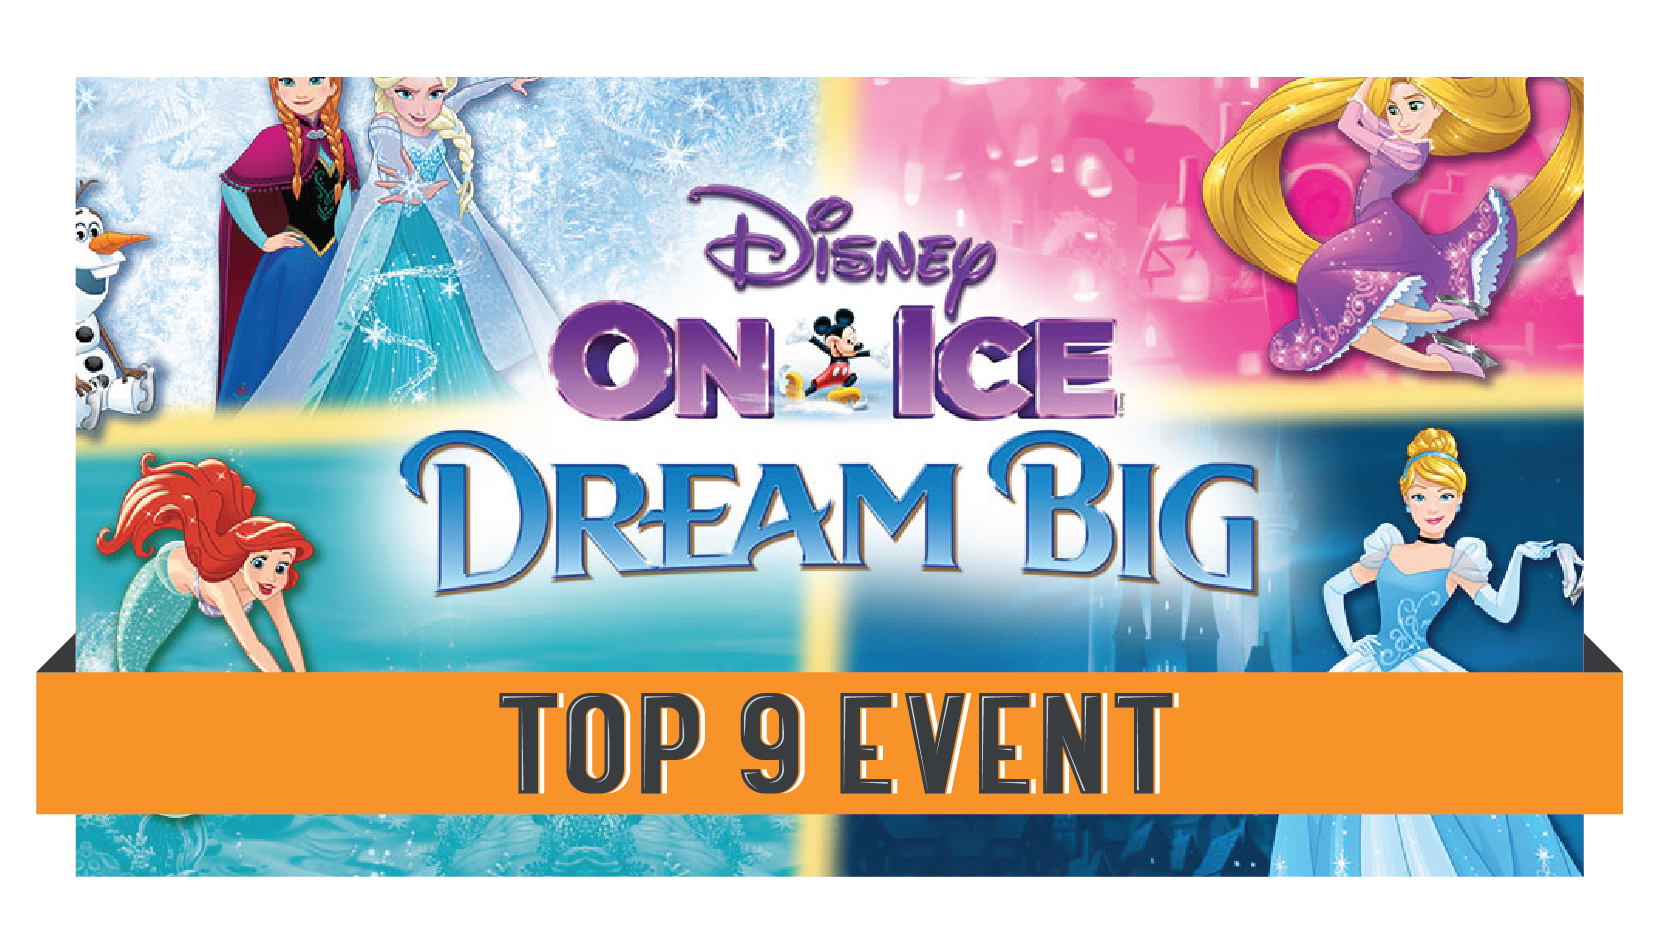 Disney on Ice Dream Big Explore419